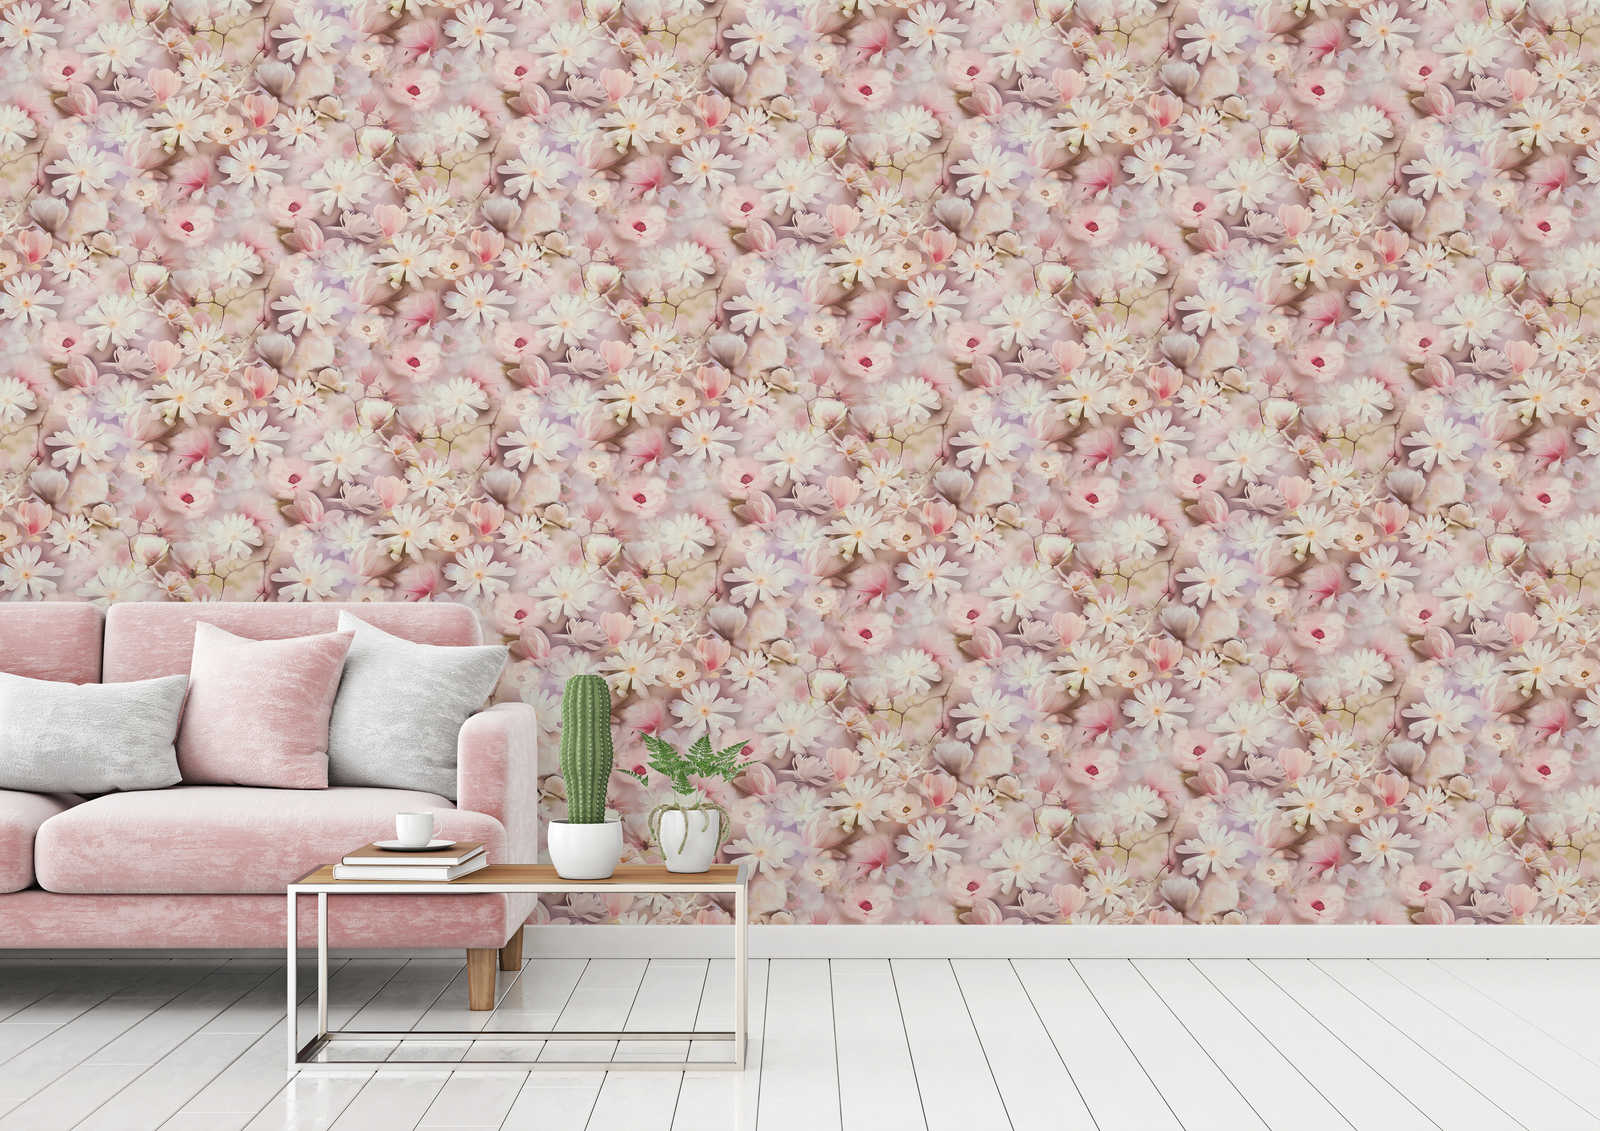             Blumentapete Collage Design in Rosa und Weiß
        